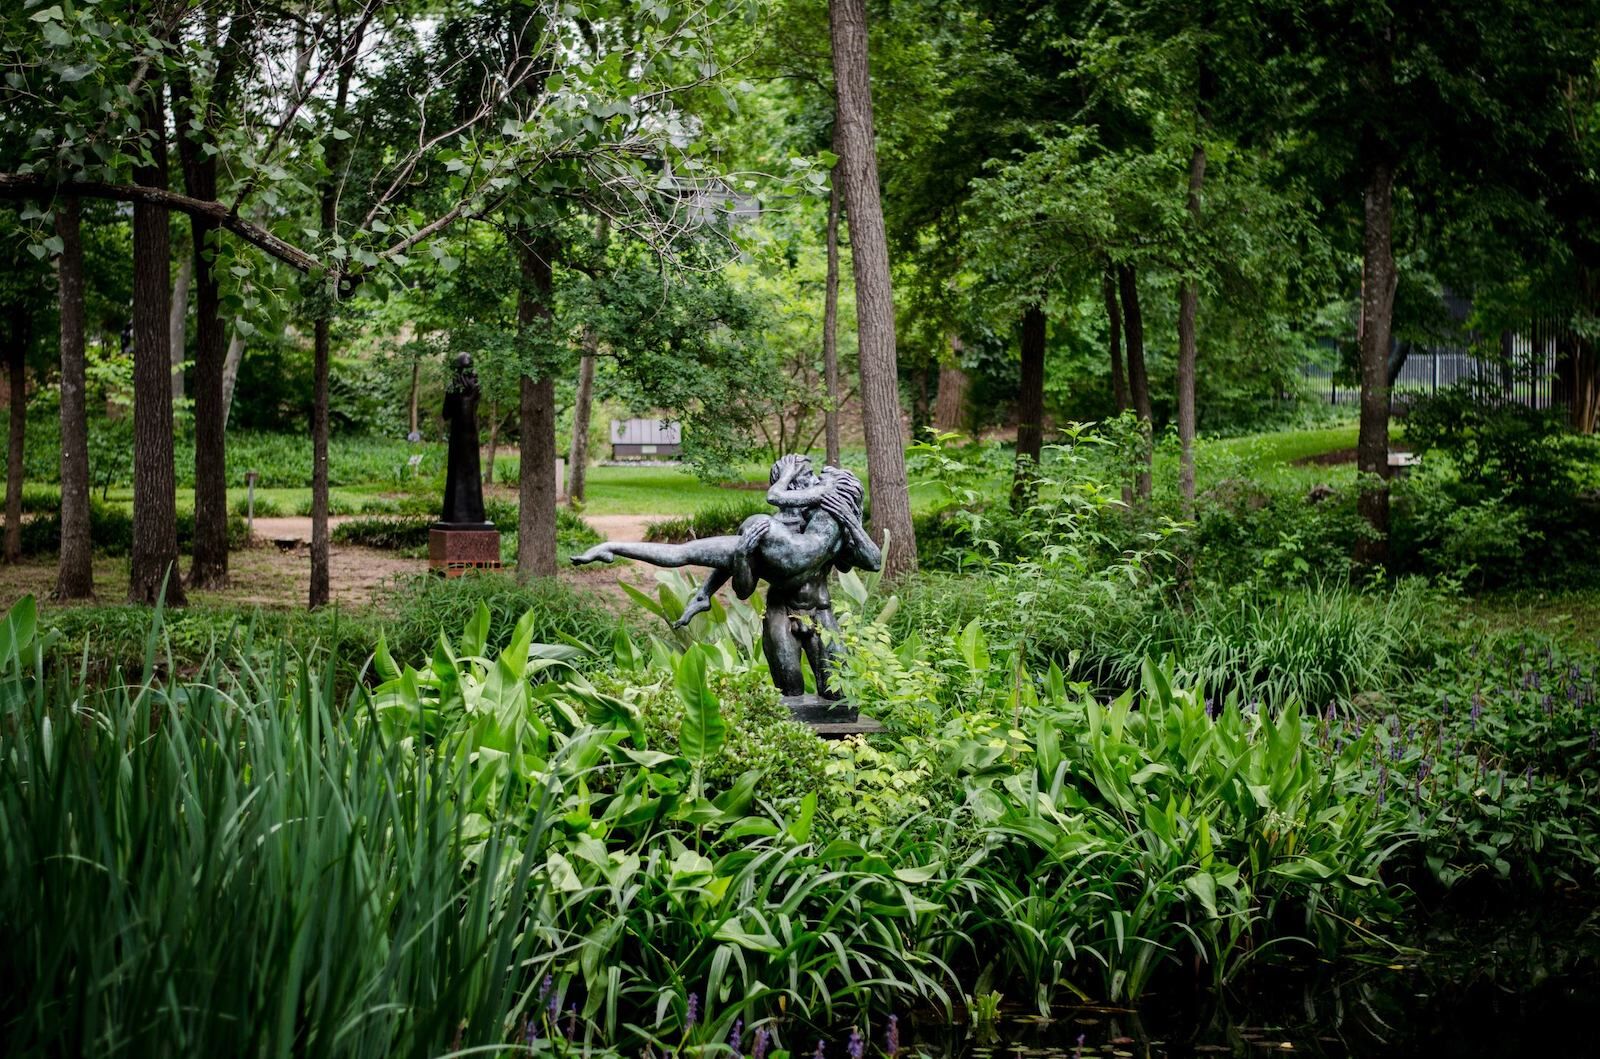 Museums in Austin: The Umlauf Sculpture Garden